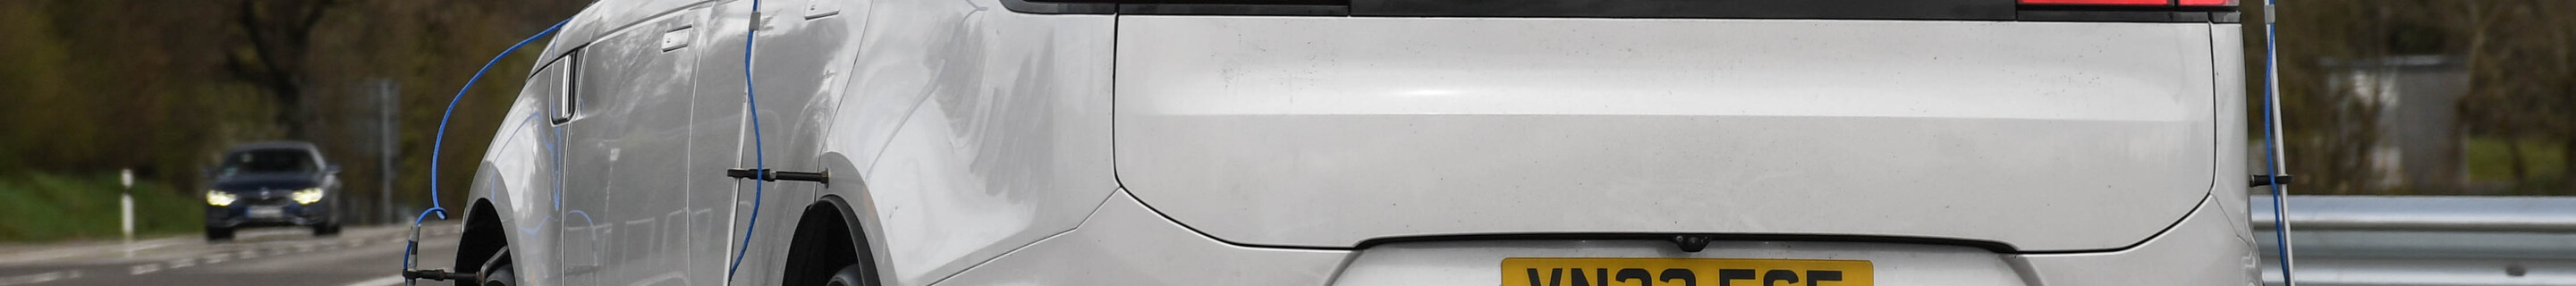 Range Rover Sport SV 2024